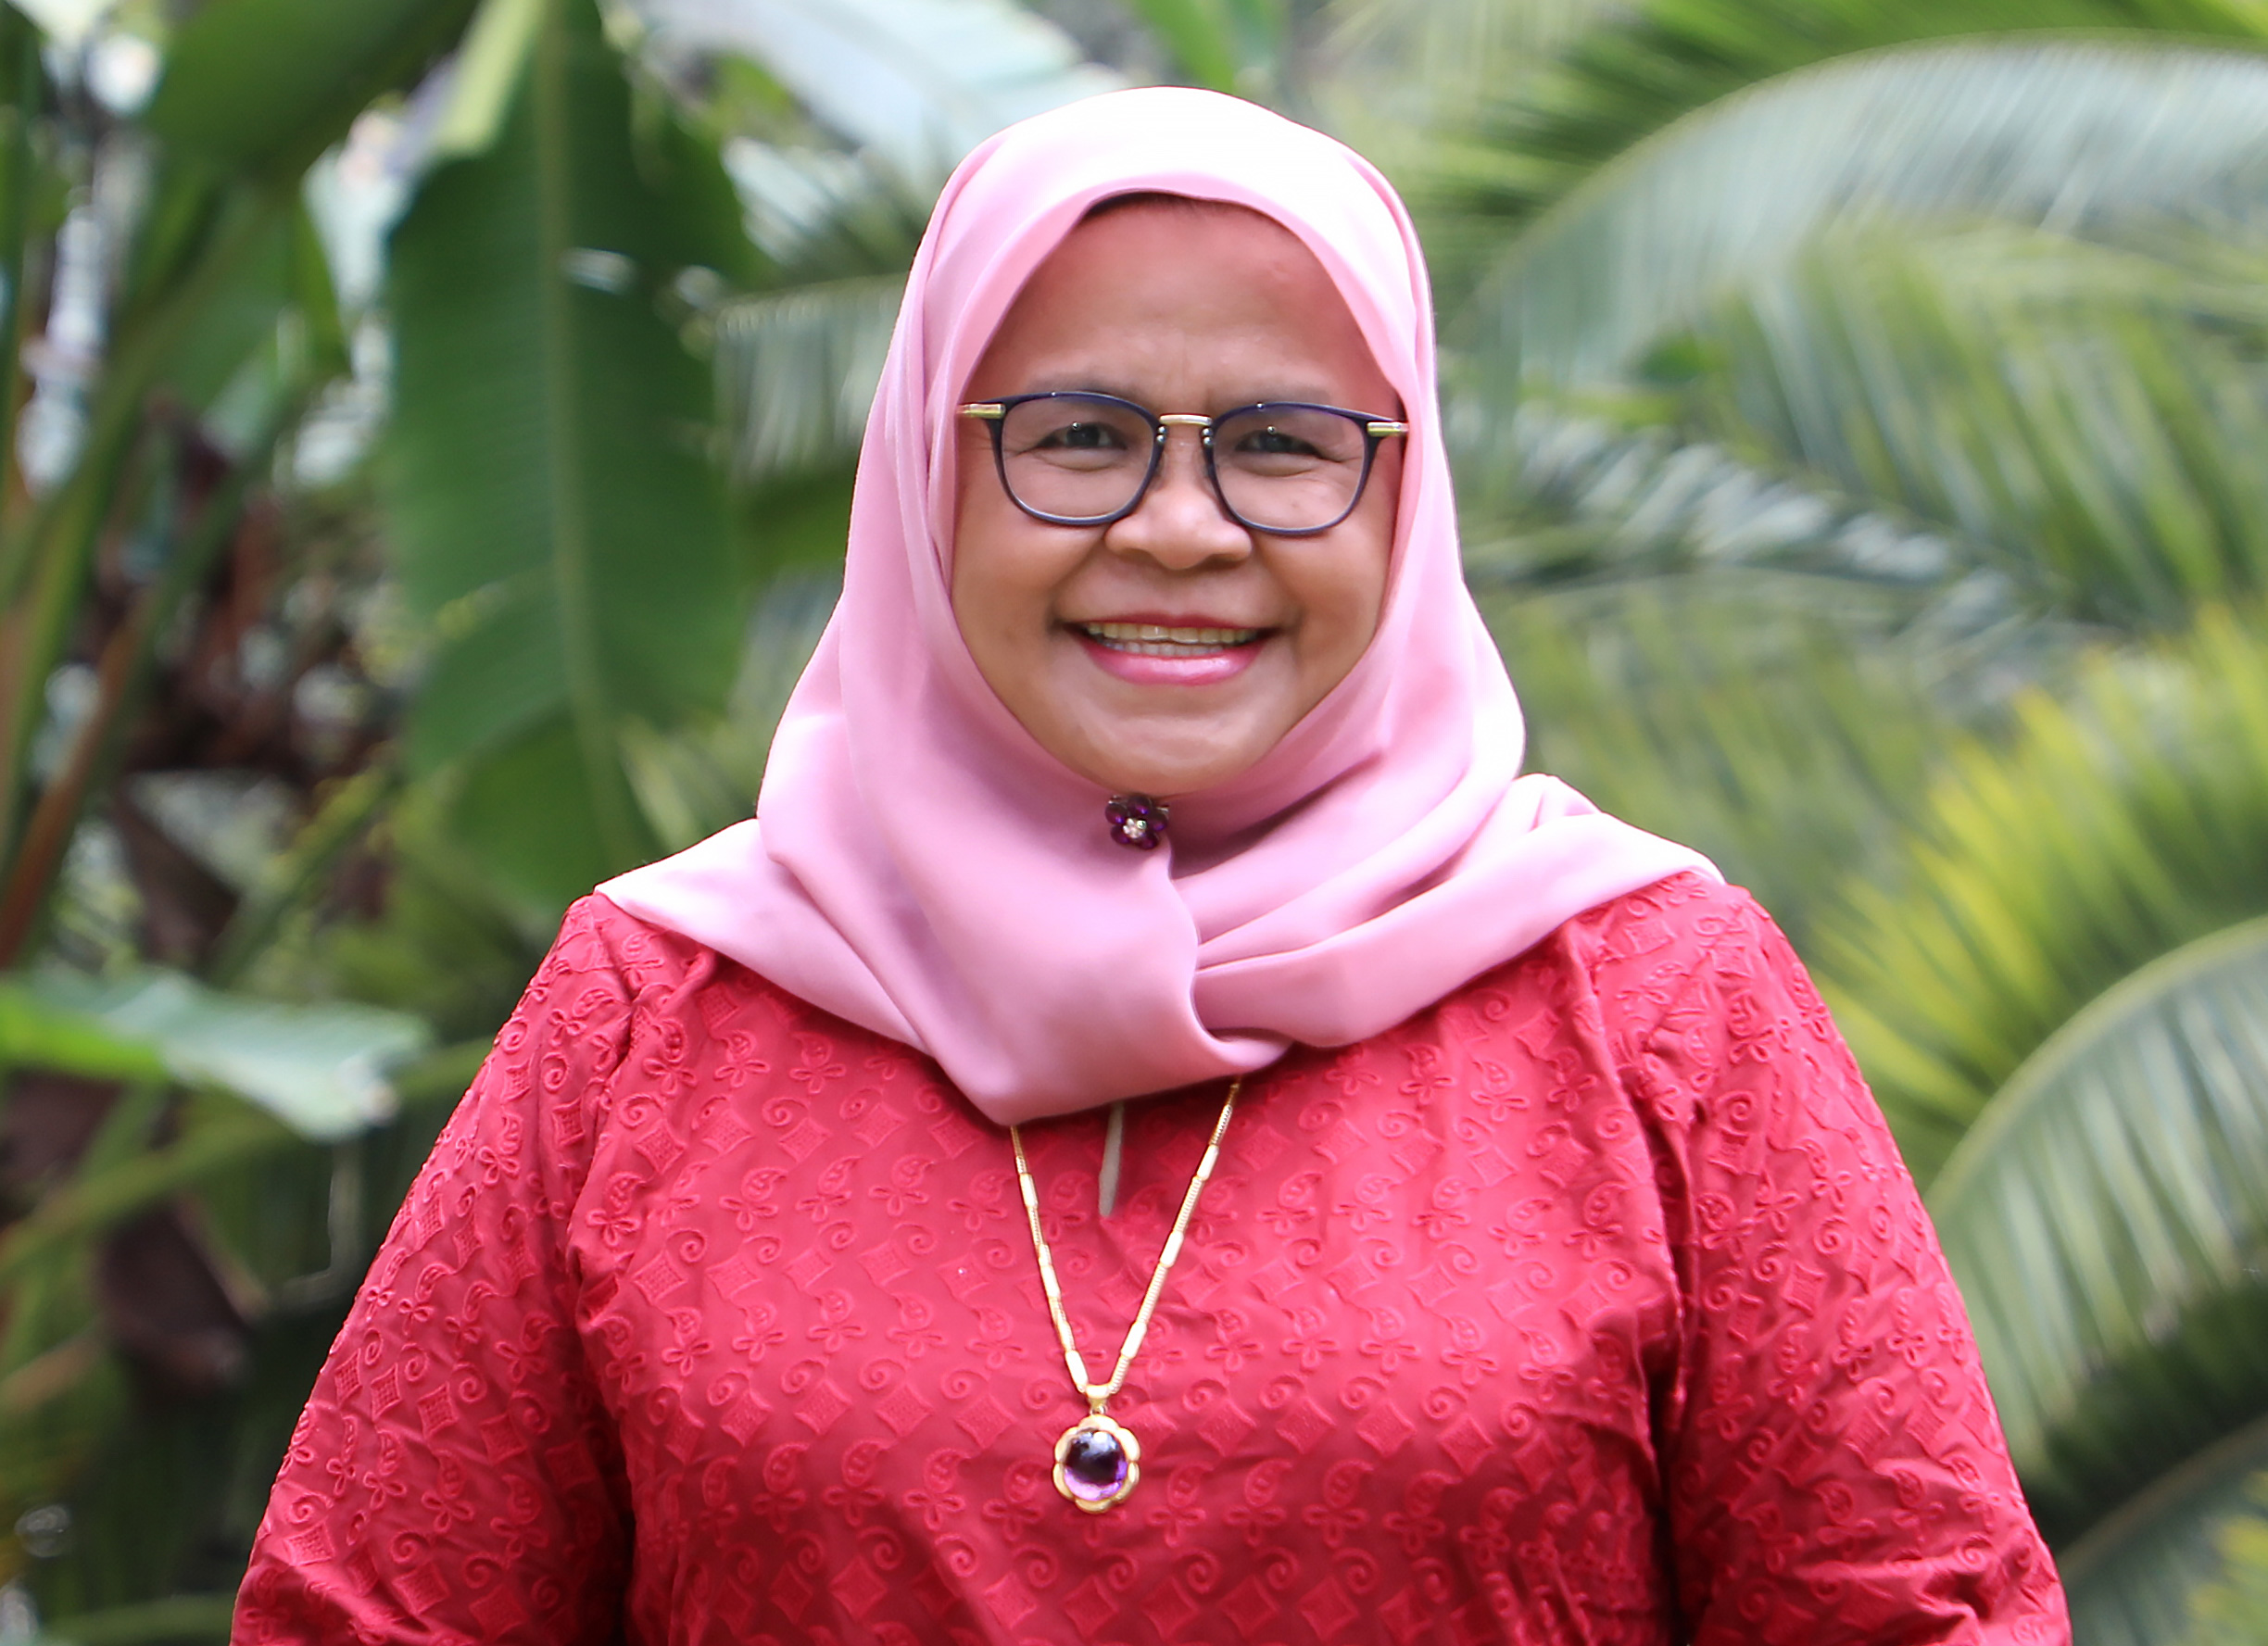 UN-Habitat’s Executive Director, Ms Maimunah Mohd Sharif